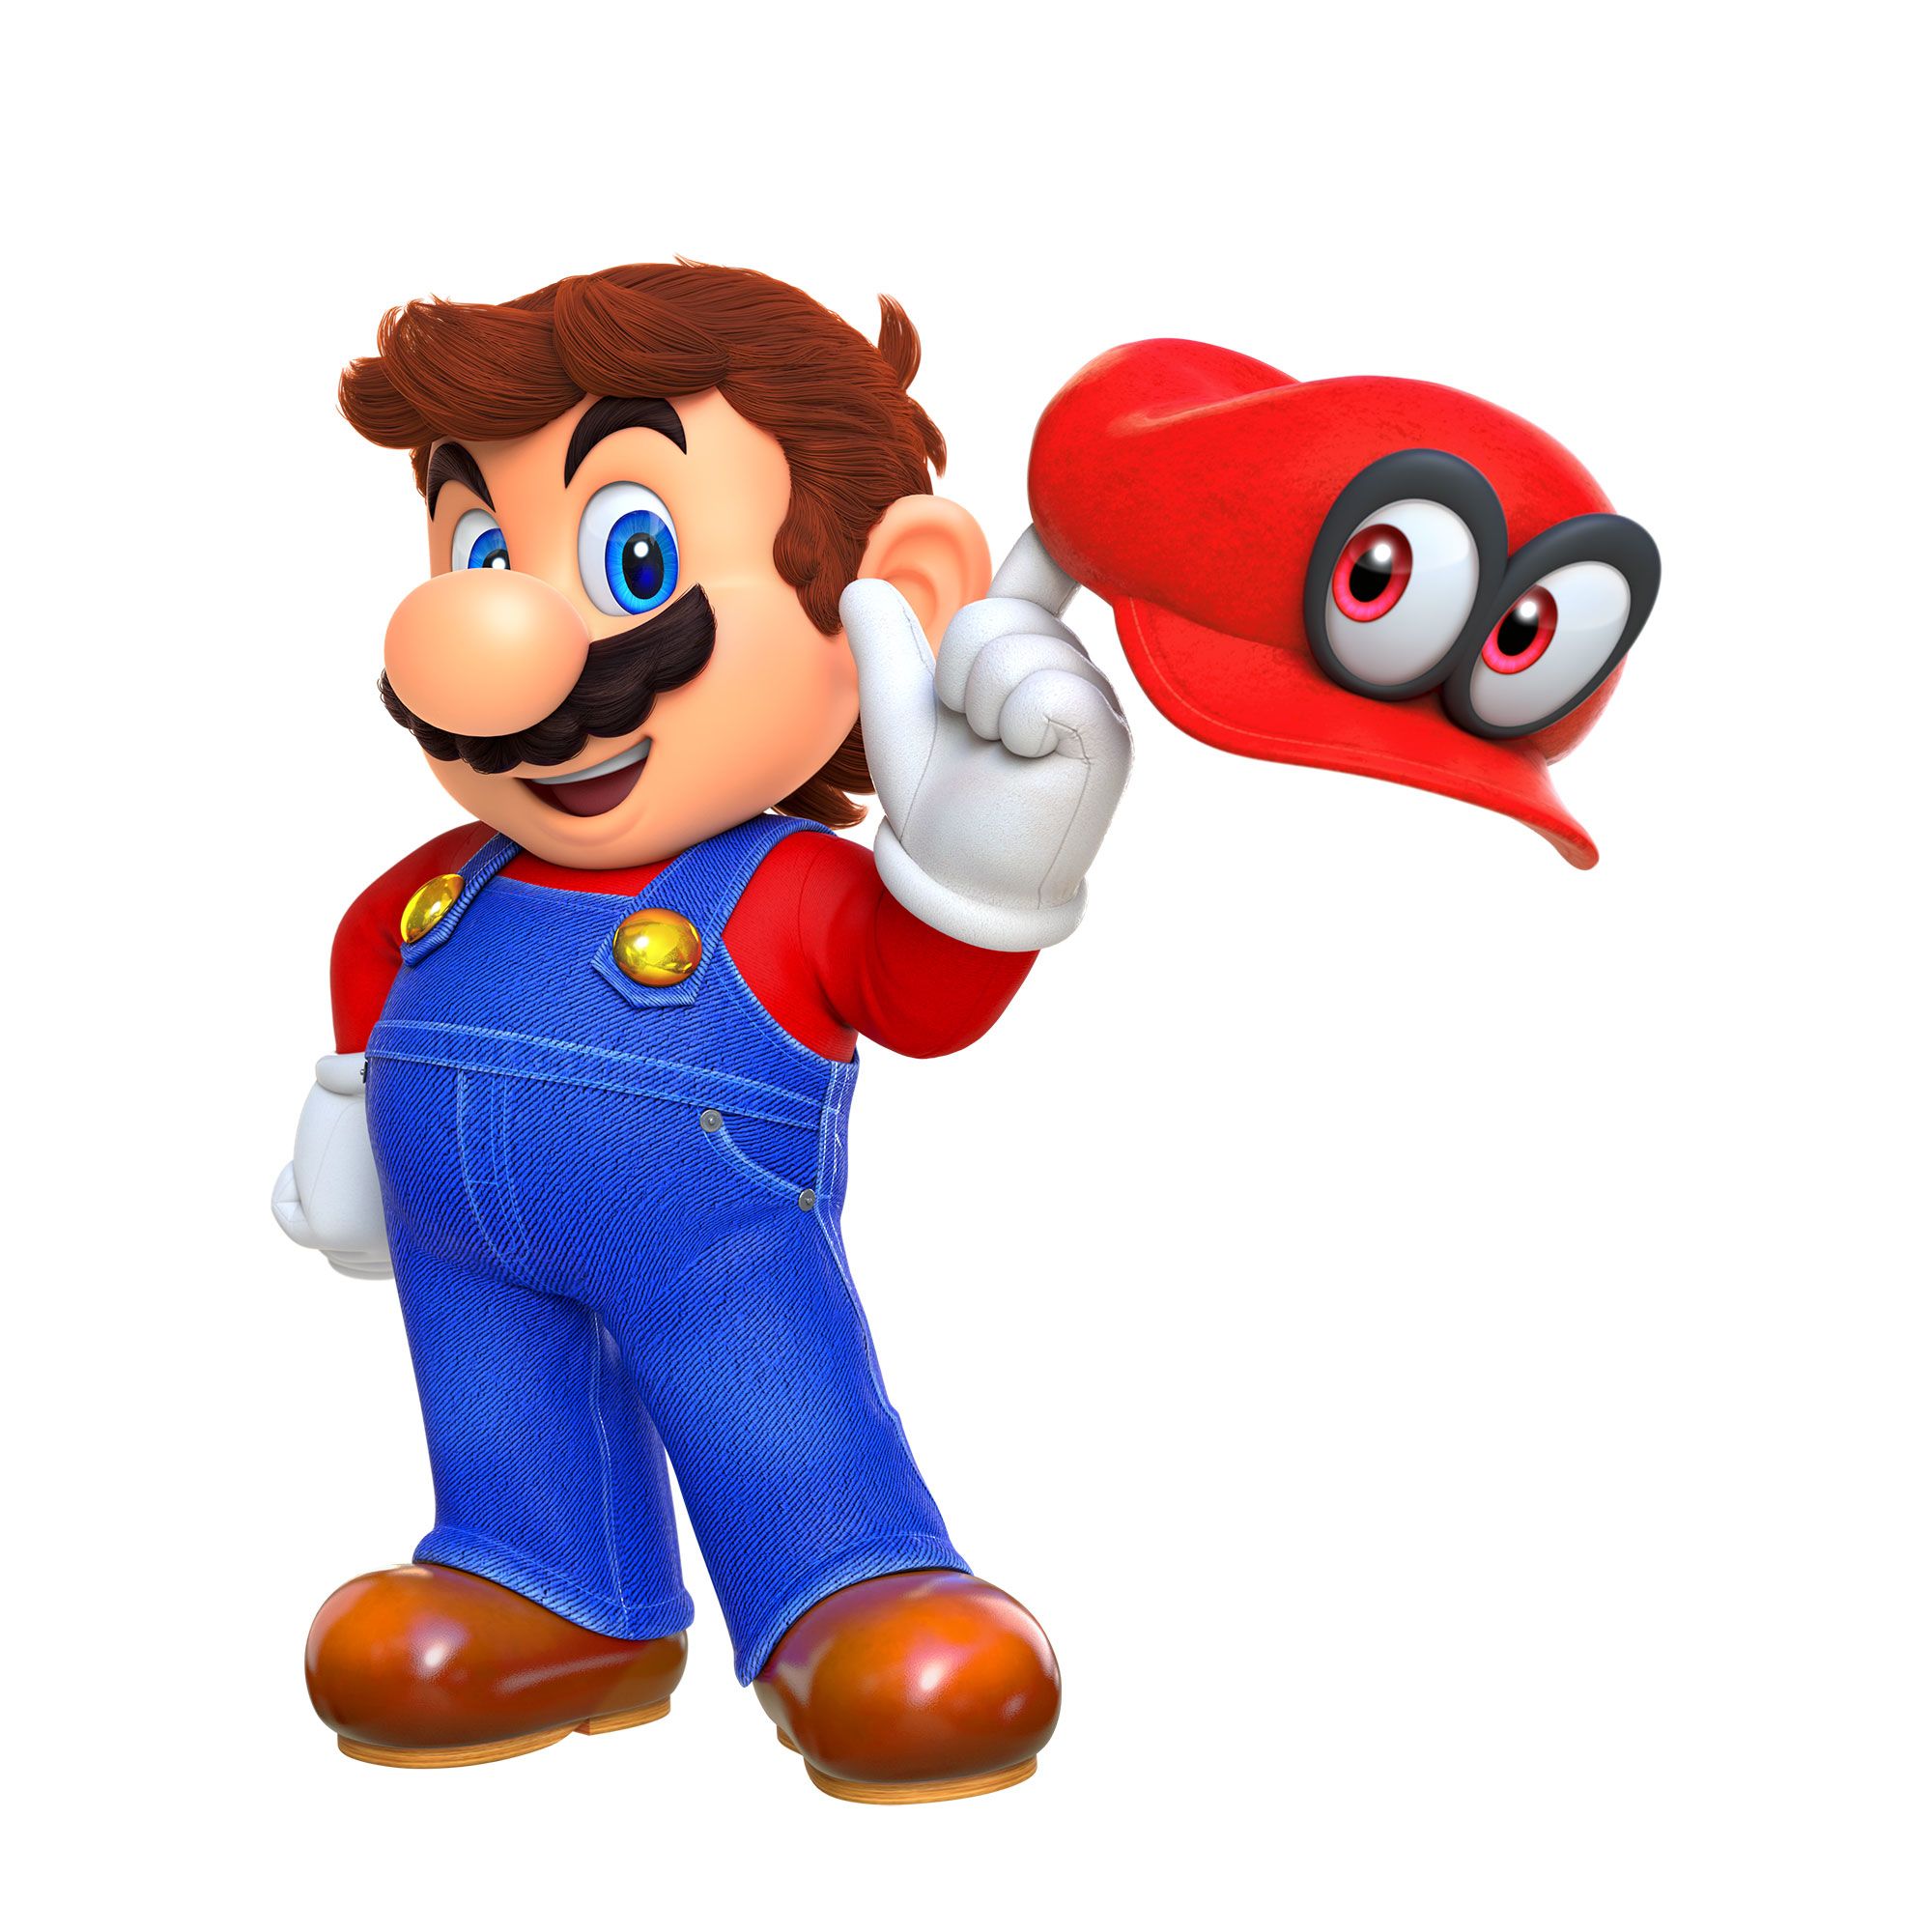 Super Mario Odyssey': Nintendo re-invents gaming icon